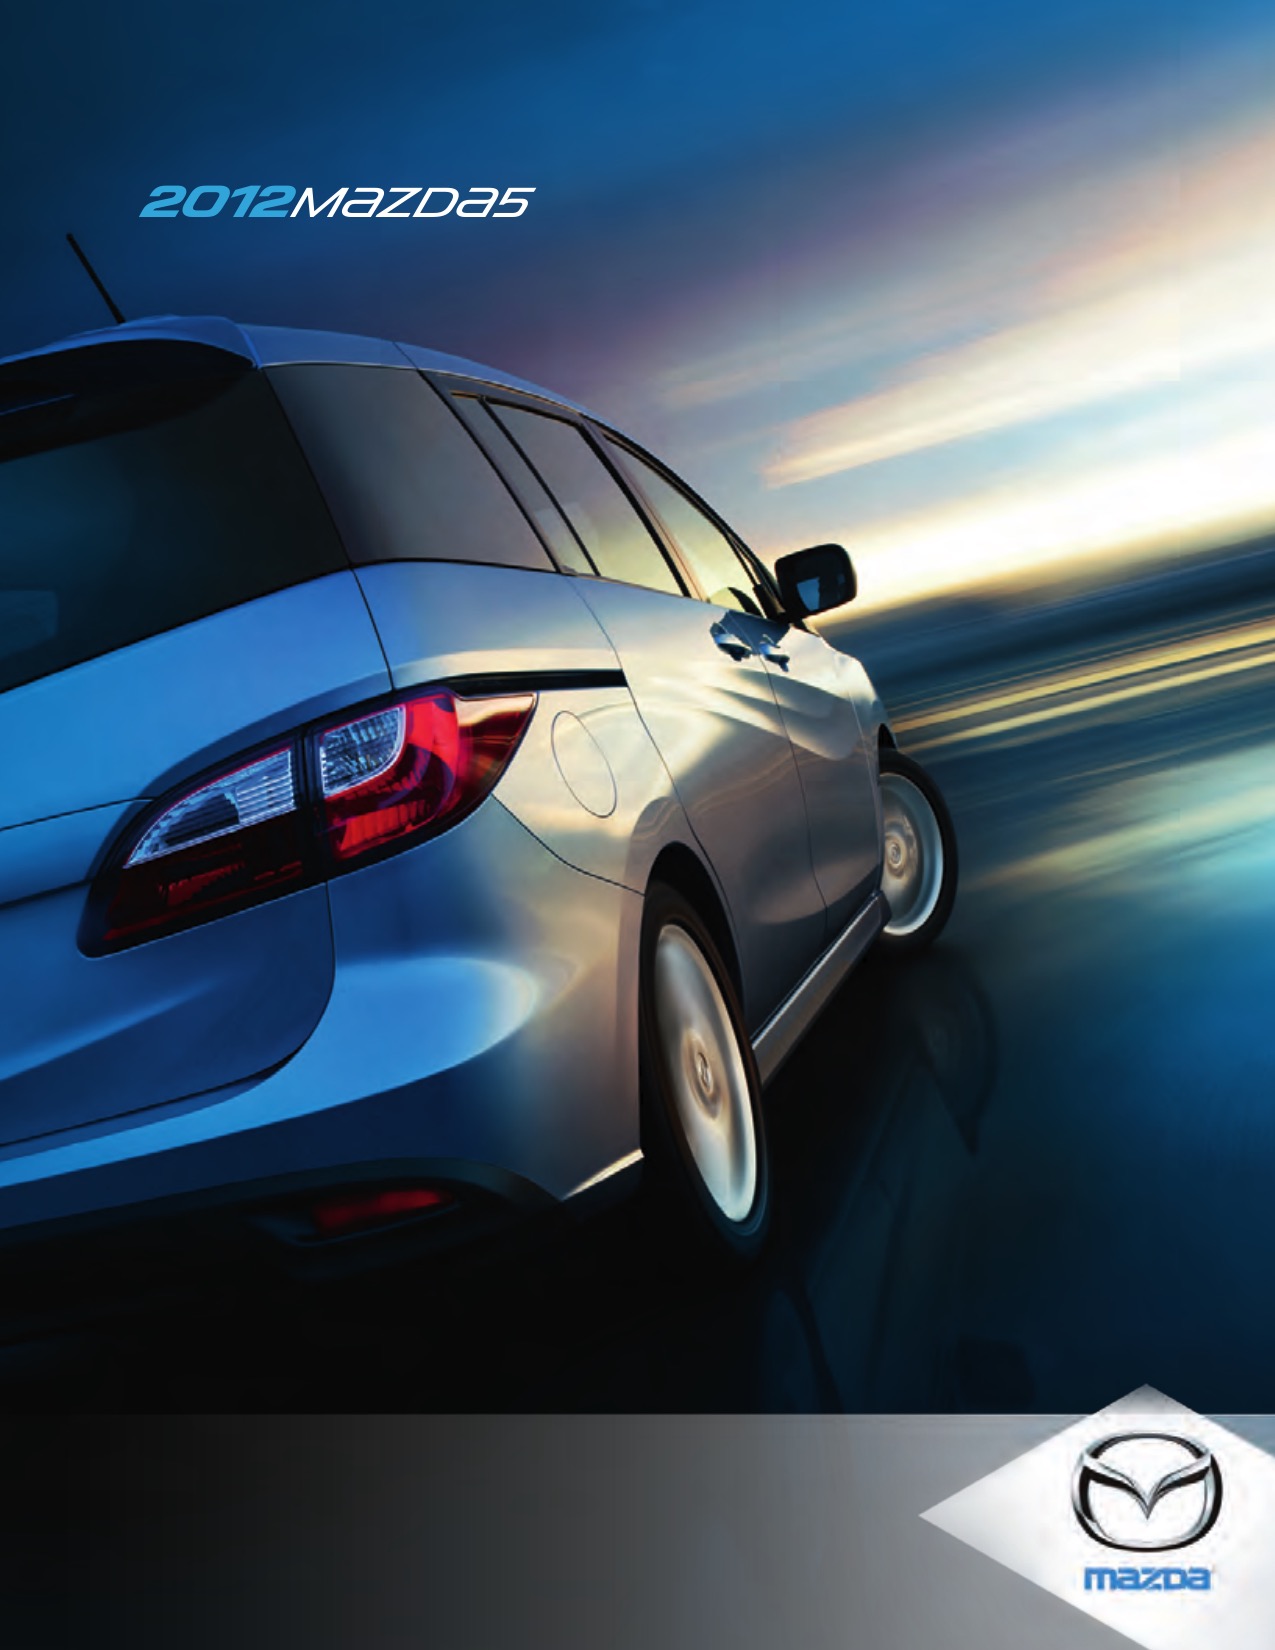 2012 Mazda 5 Brochure